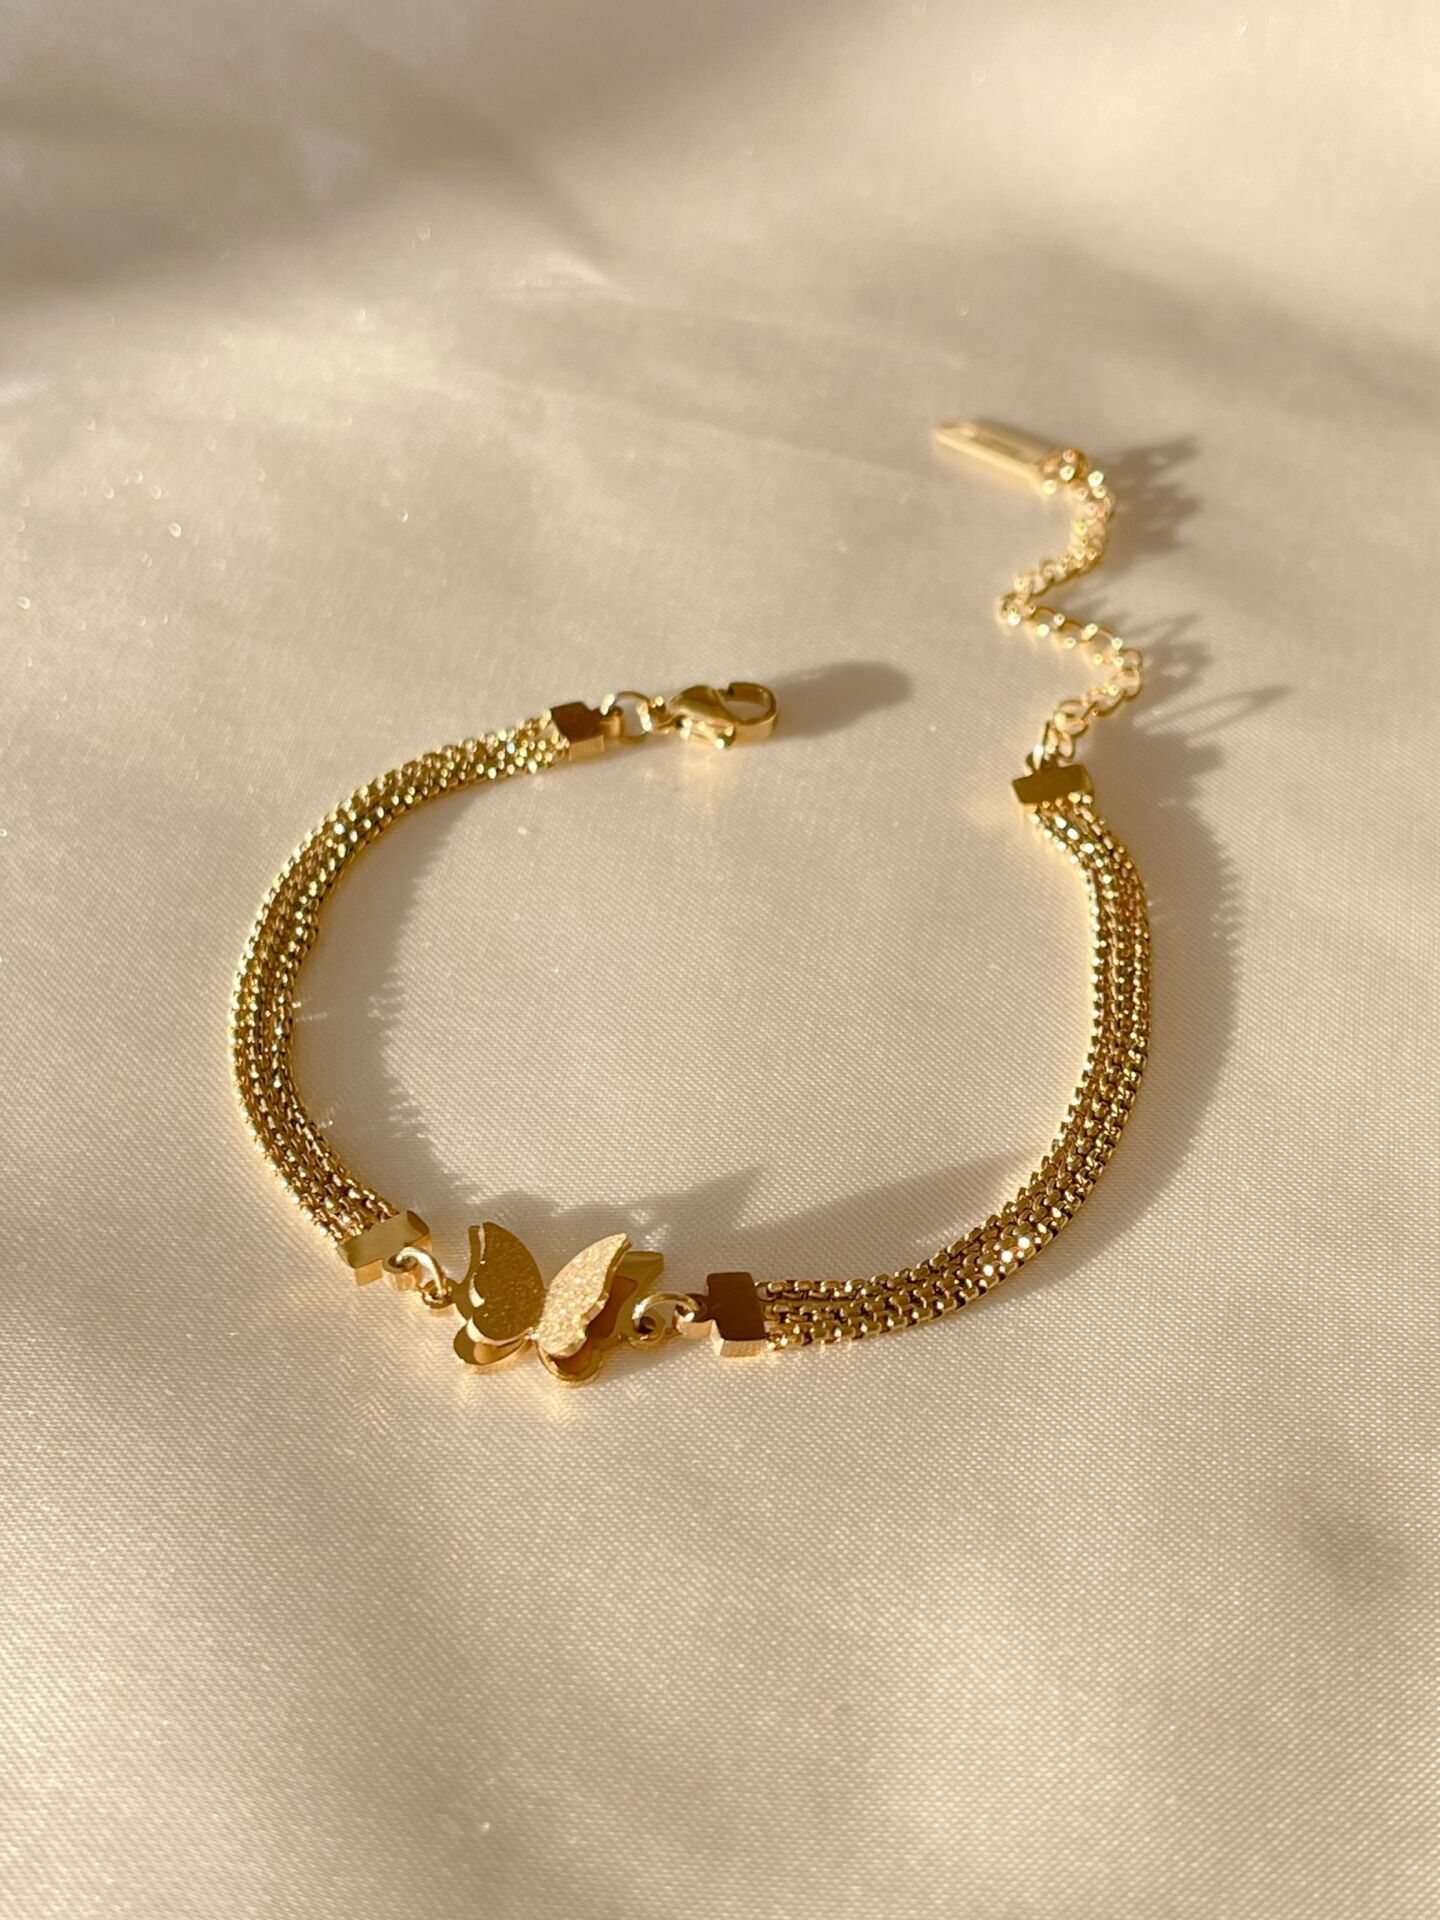 Butterfly chain bracelet | Chain bracelet, Bracelet shops, Chain